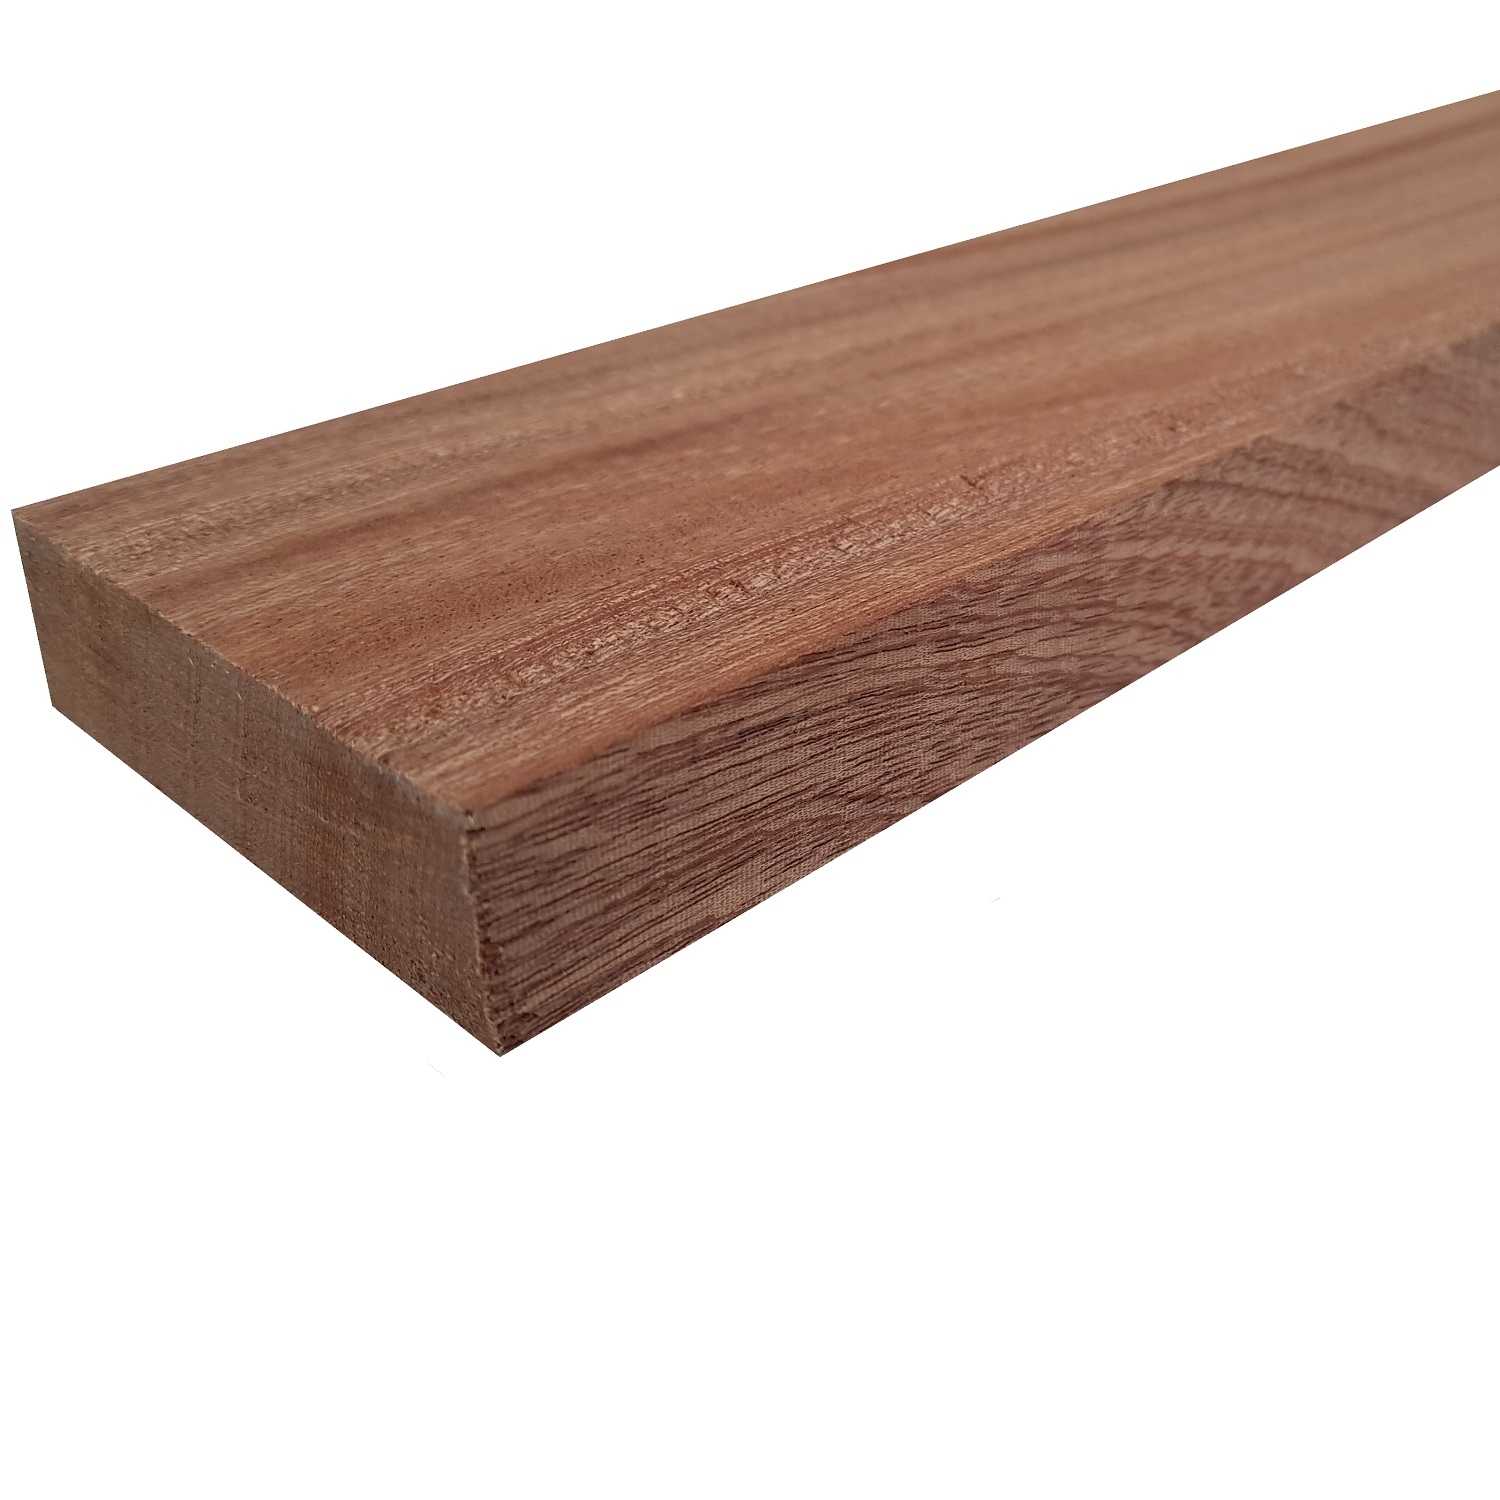 Tavola legno di Mogano Refilato Piallato mm 21 x 180 x 1250 Sipo